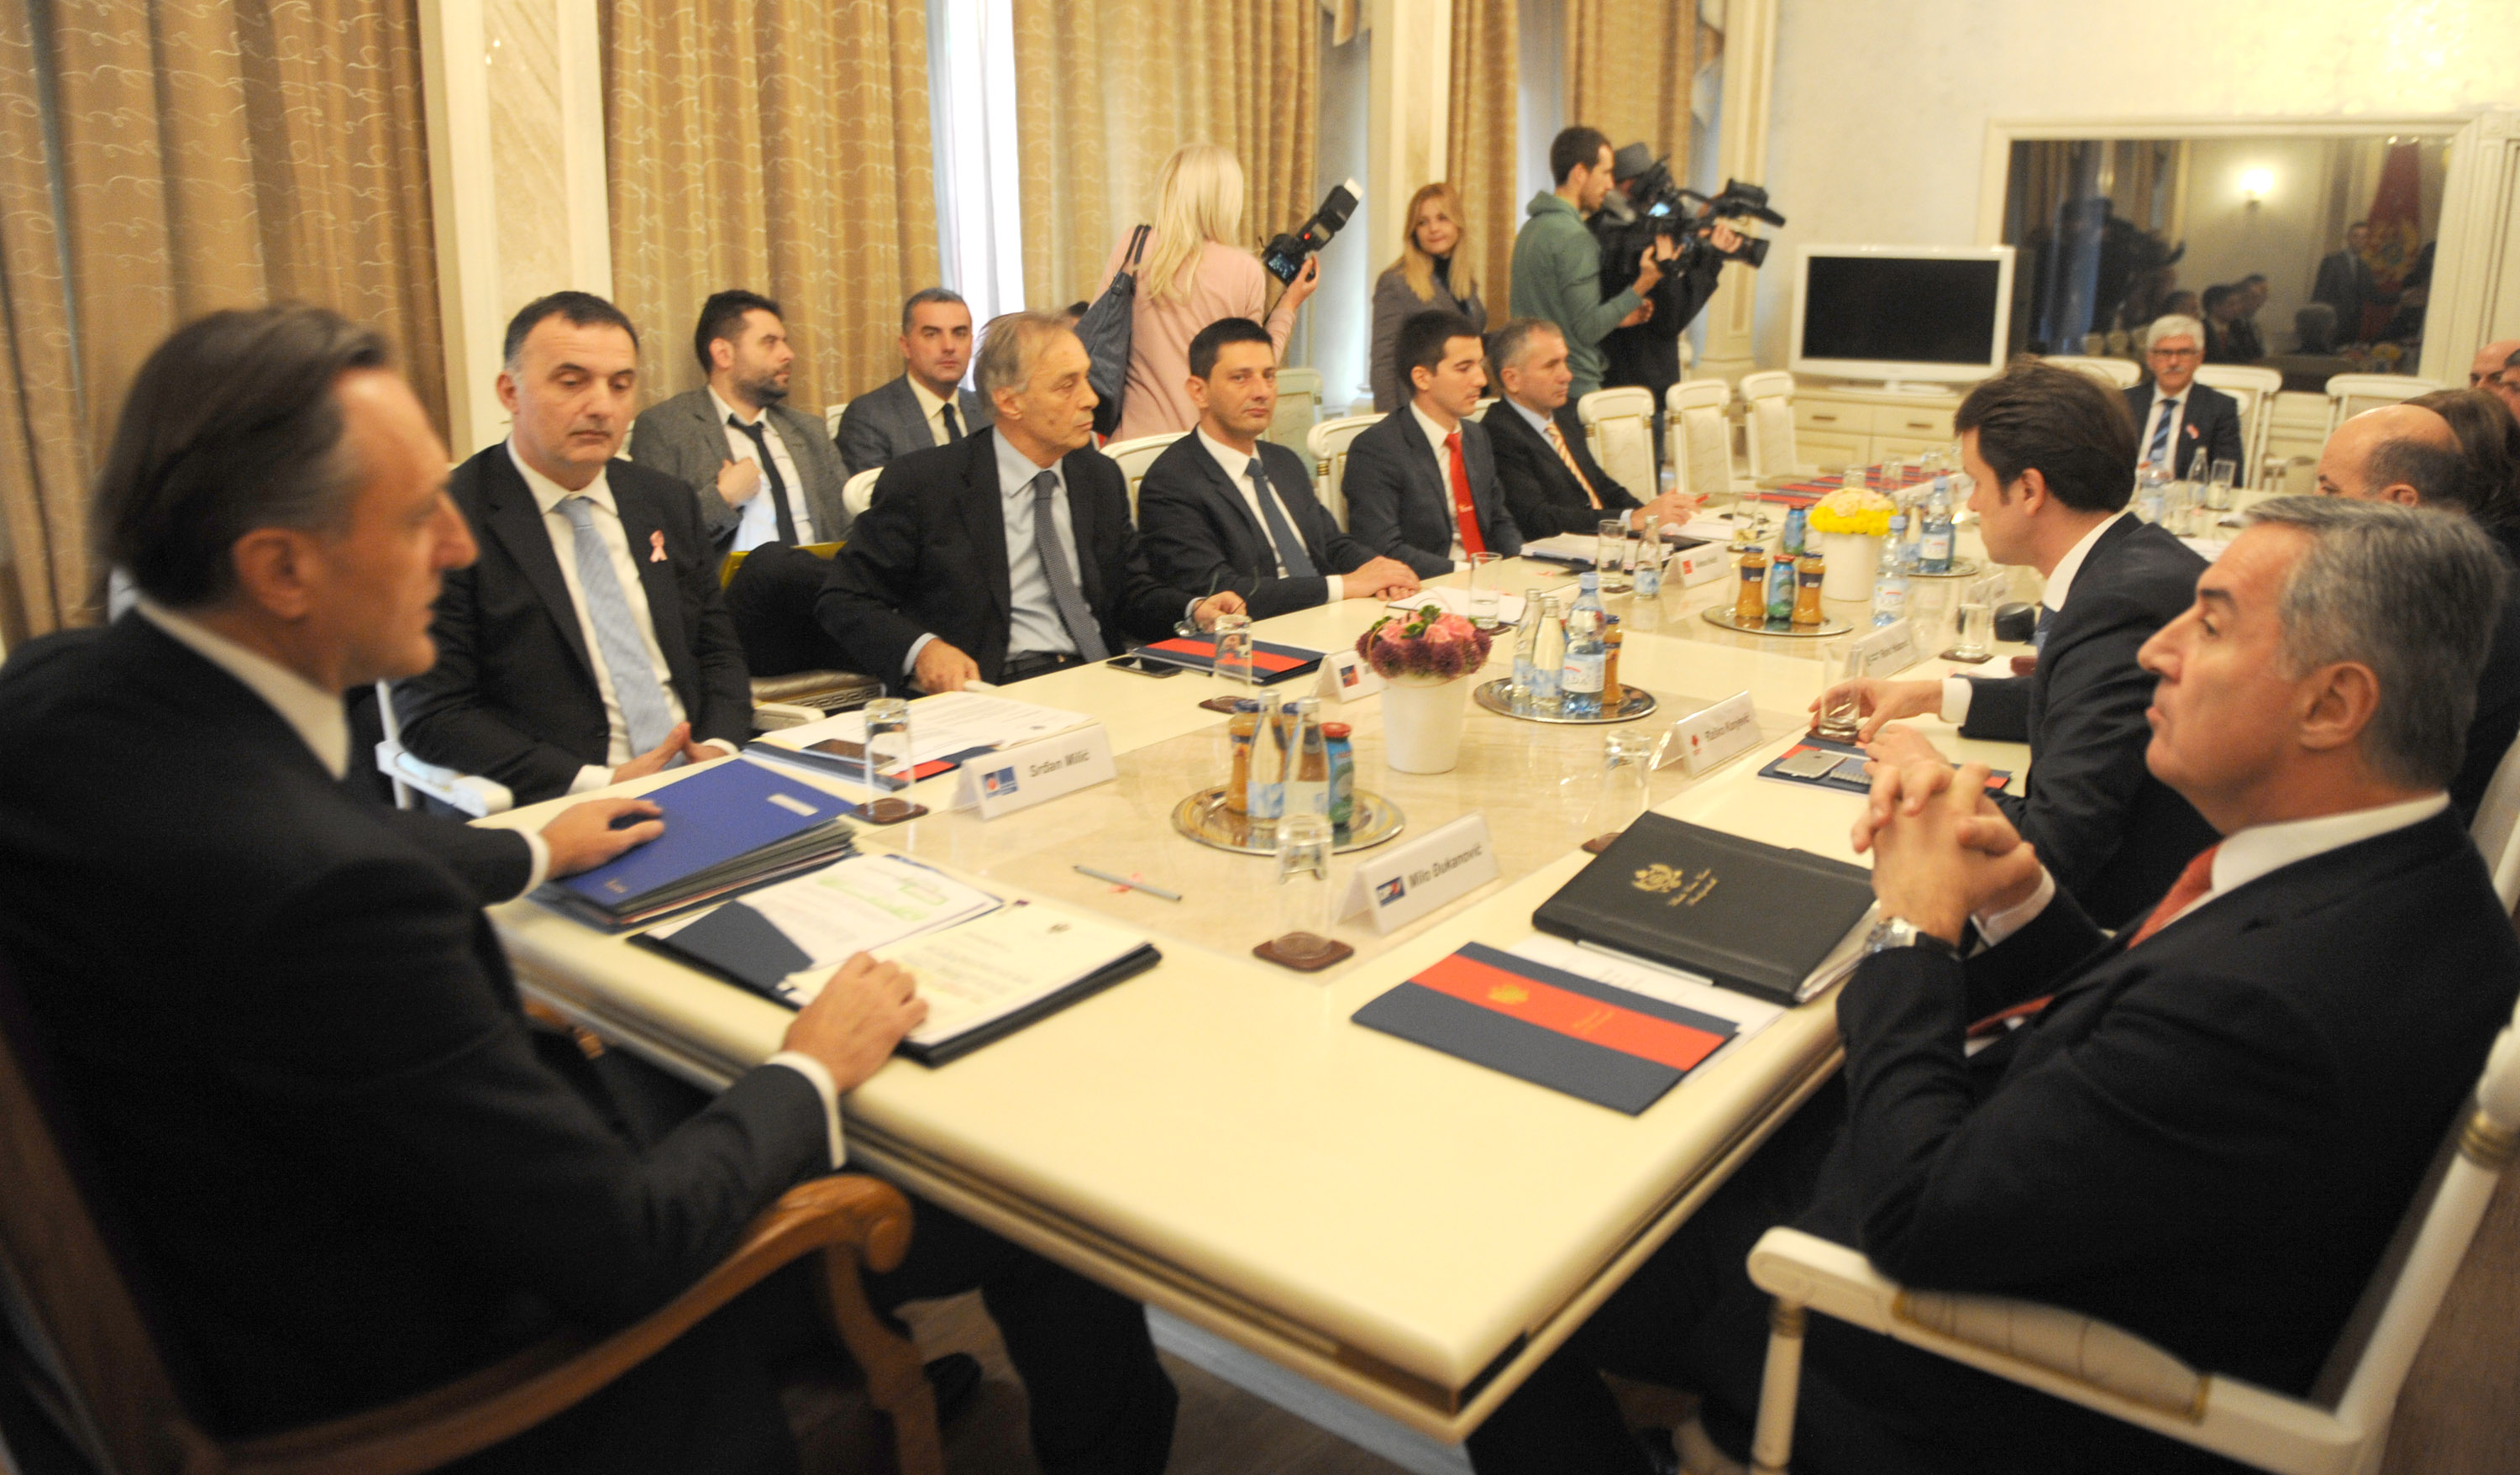 sastanak opozicije 2015.